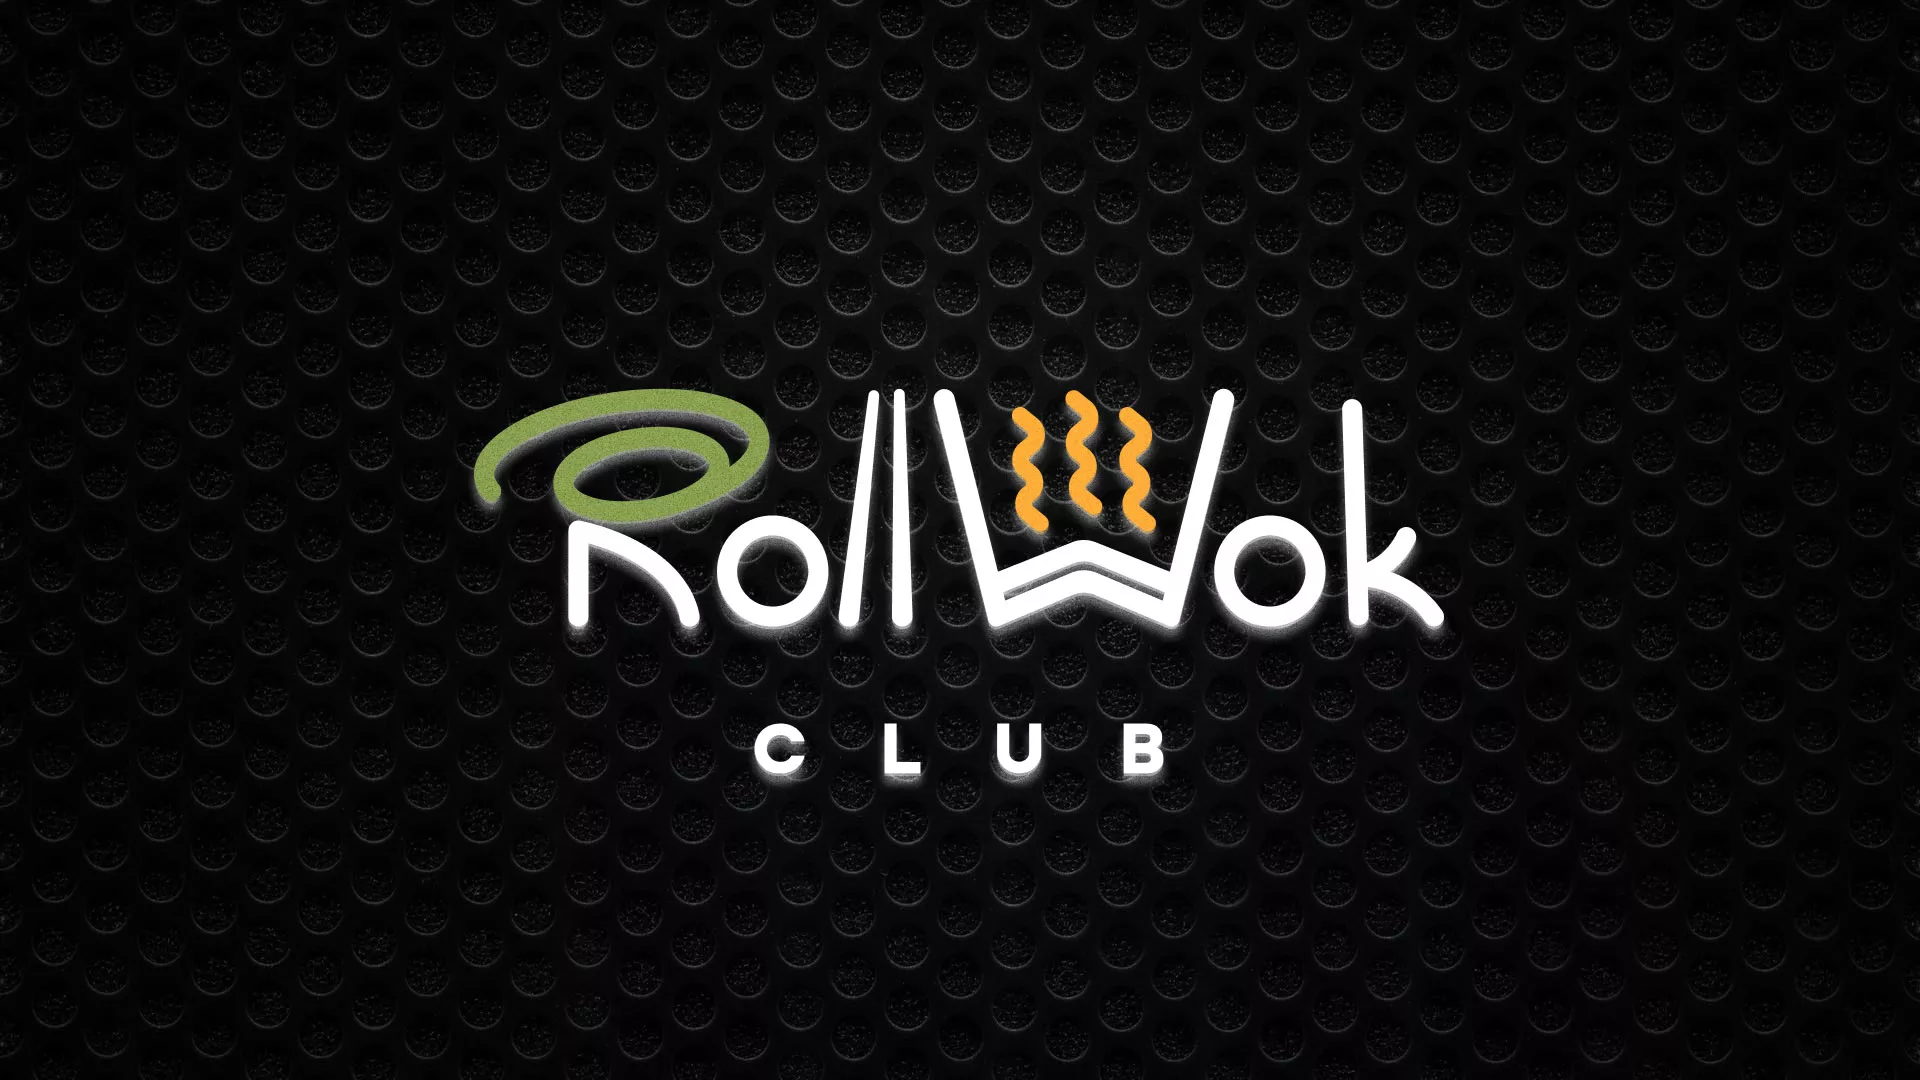 Брендирование торговых точек суши-бара «Roll Wok Club» в Зеленокумске